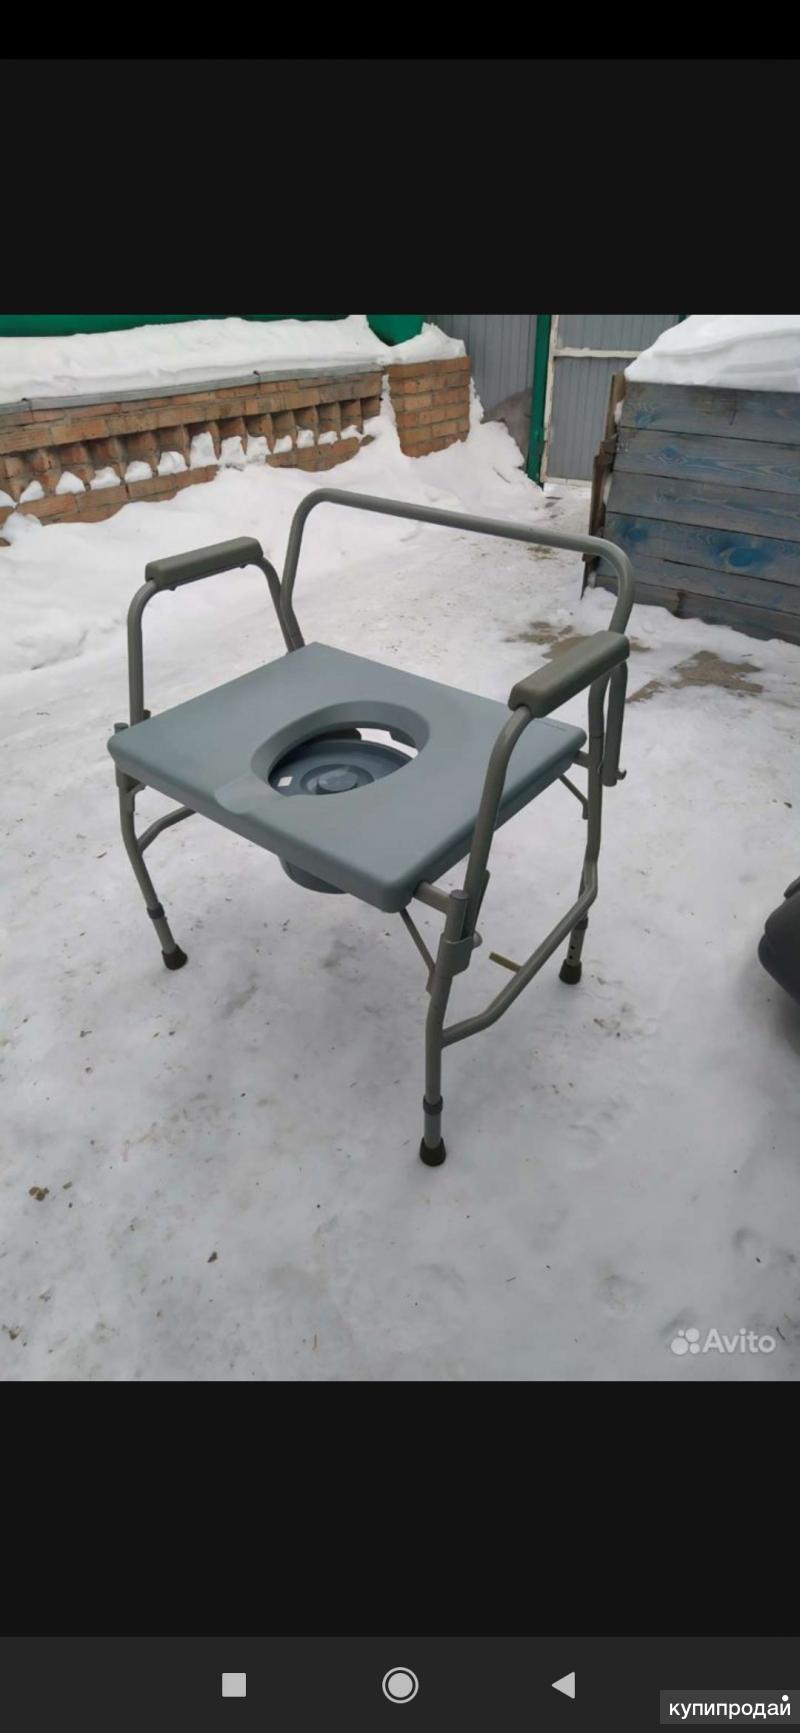 Кресло стул с санитарным оснащением пассивного типа повышенной грузоподъемности без колес